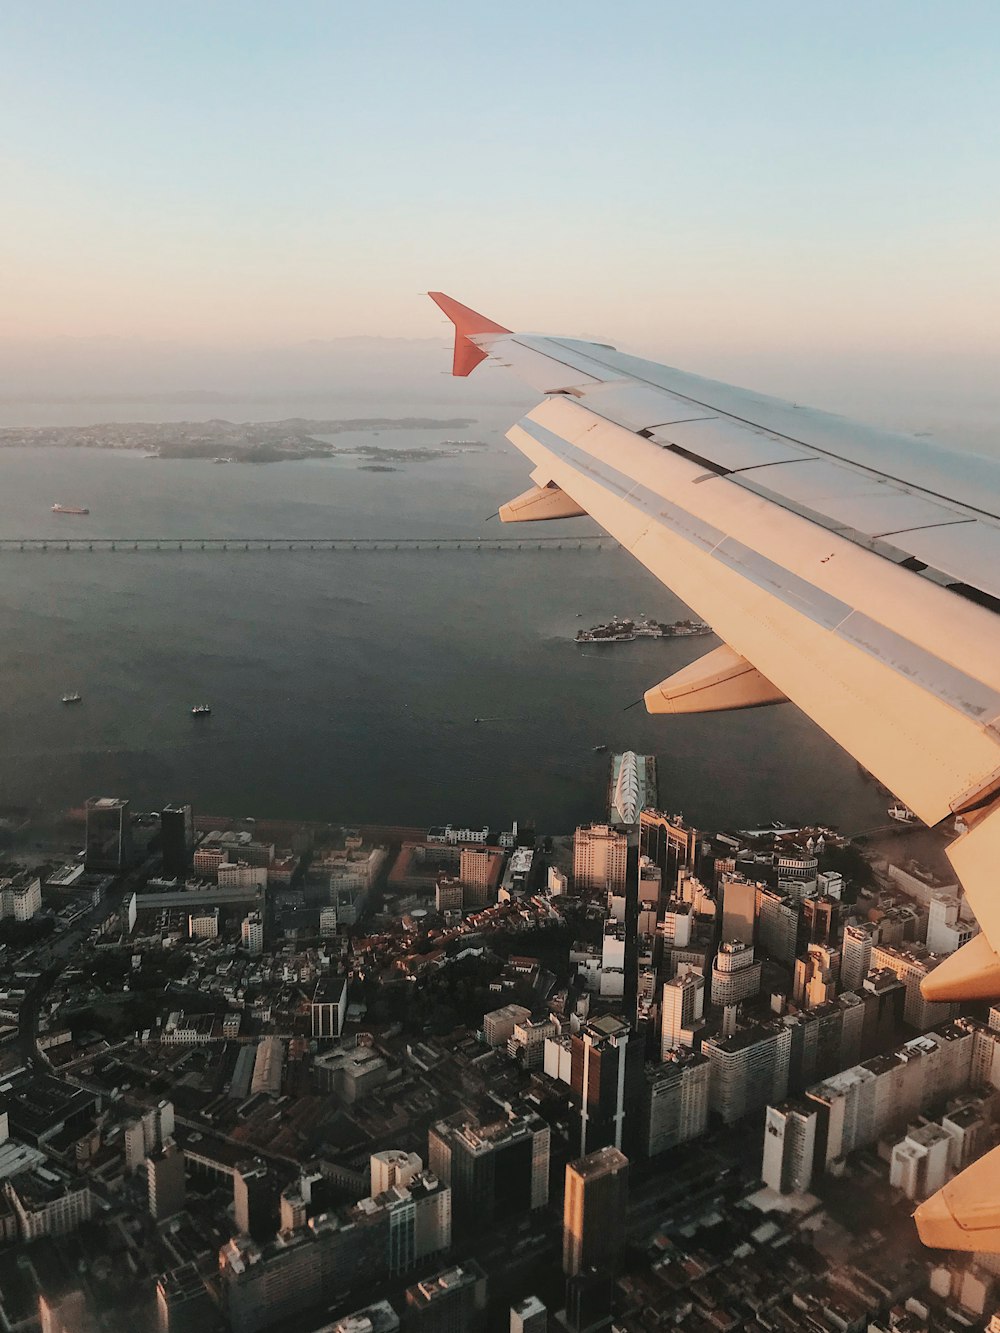 Vue aérienne d’ailes d’avion et vue d’immeubles de grande hauteur